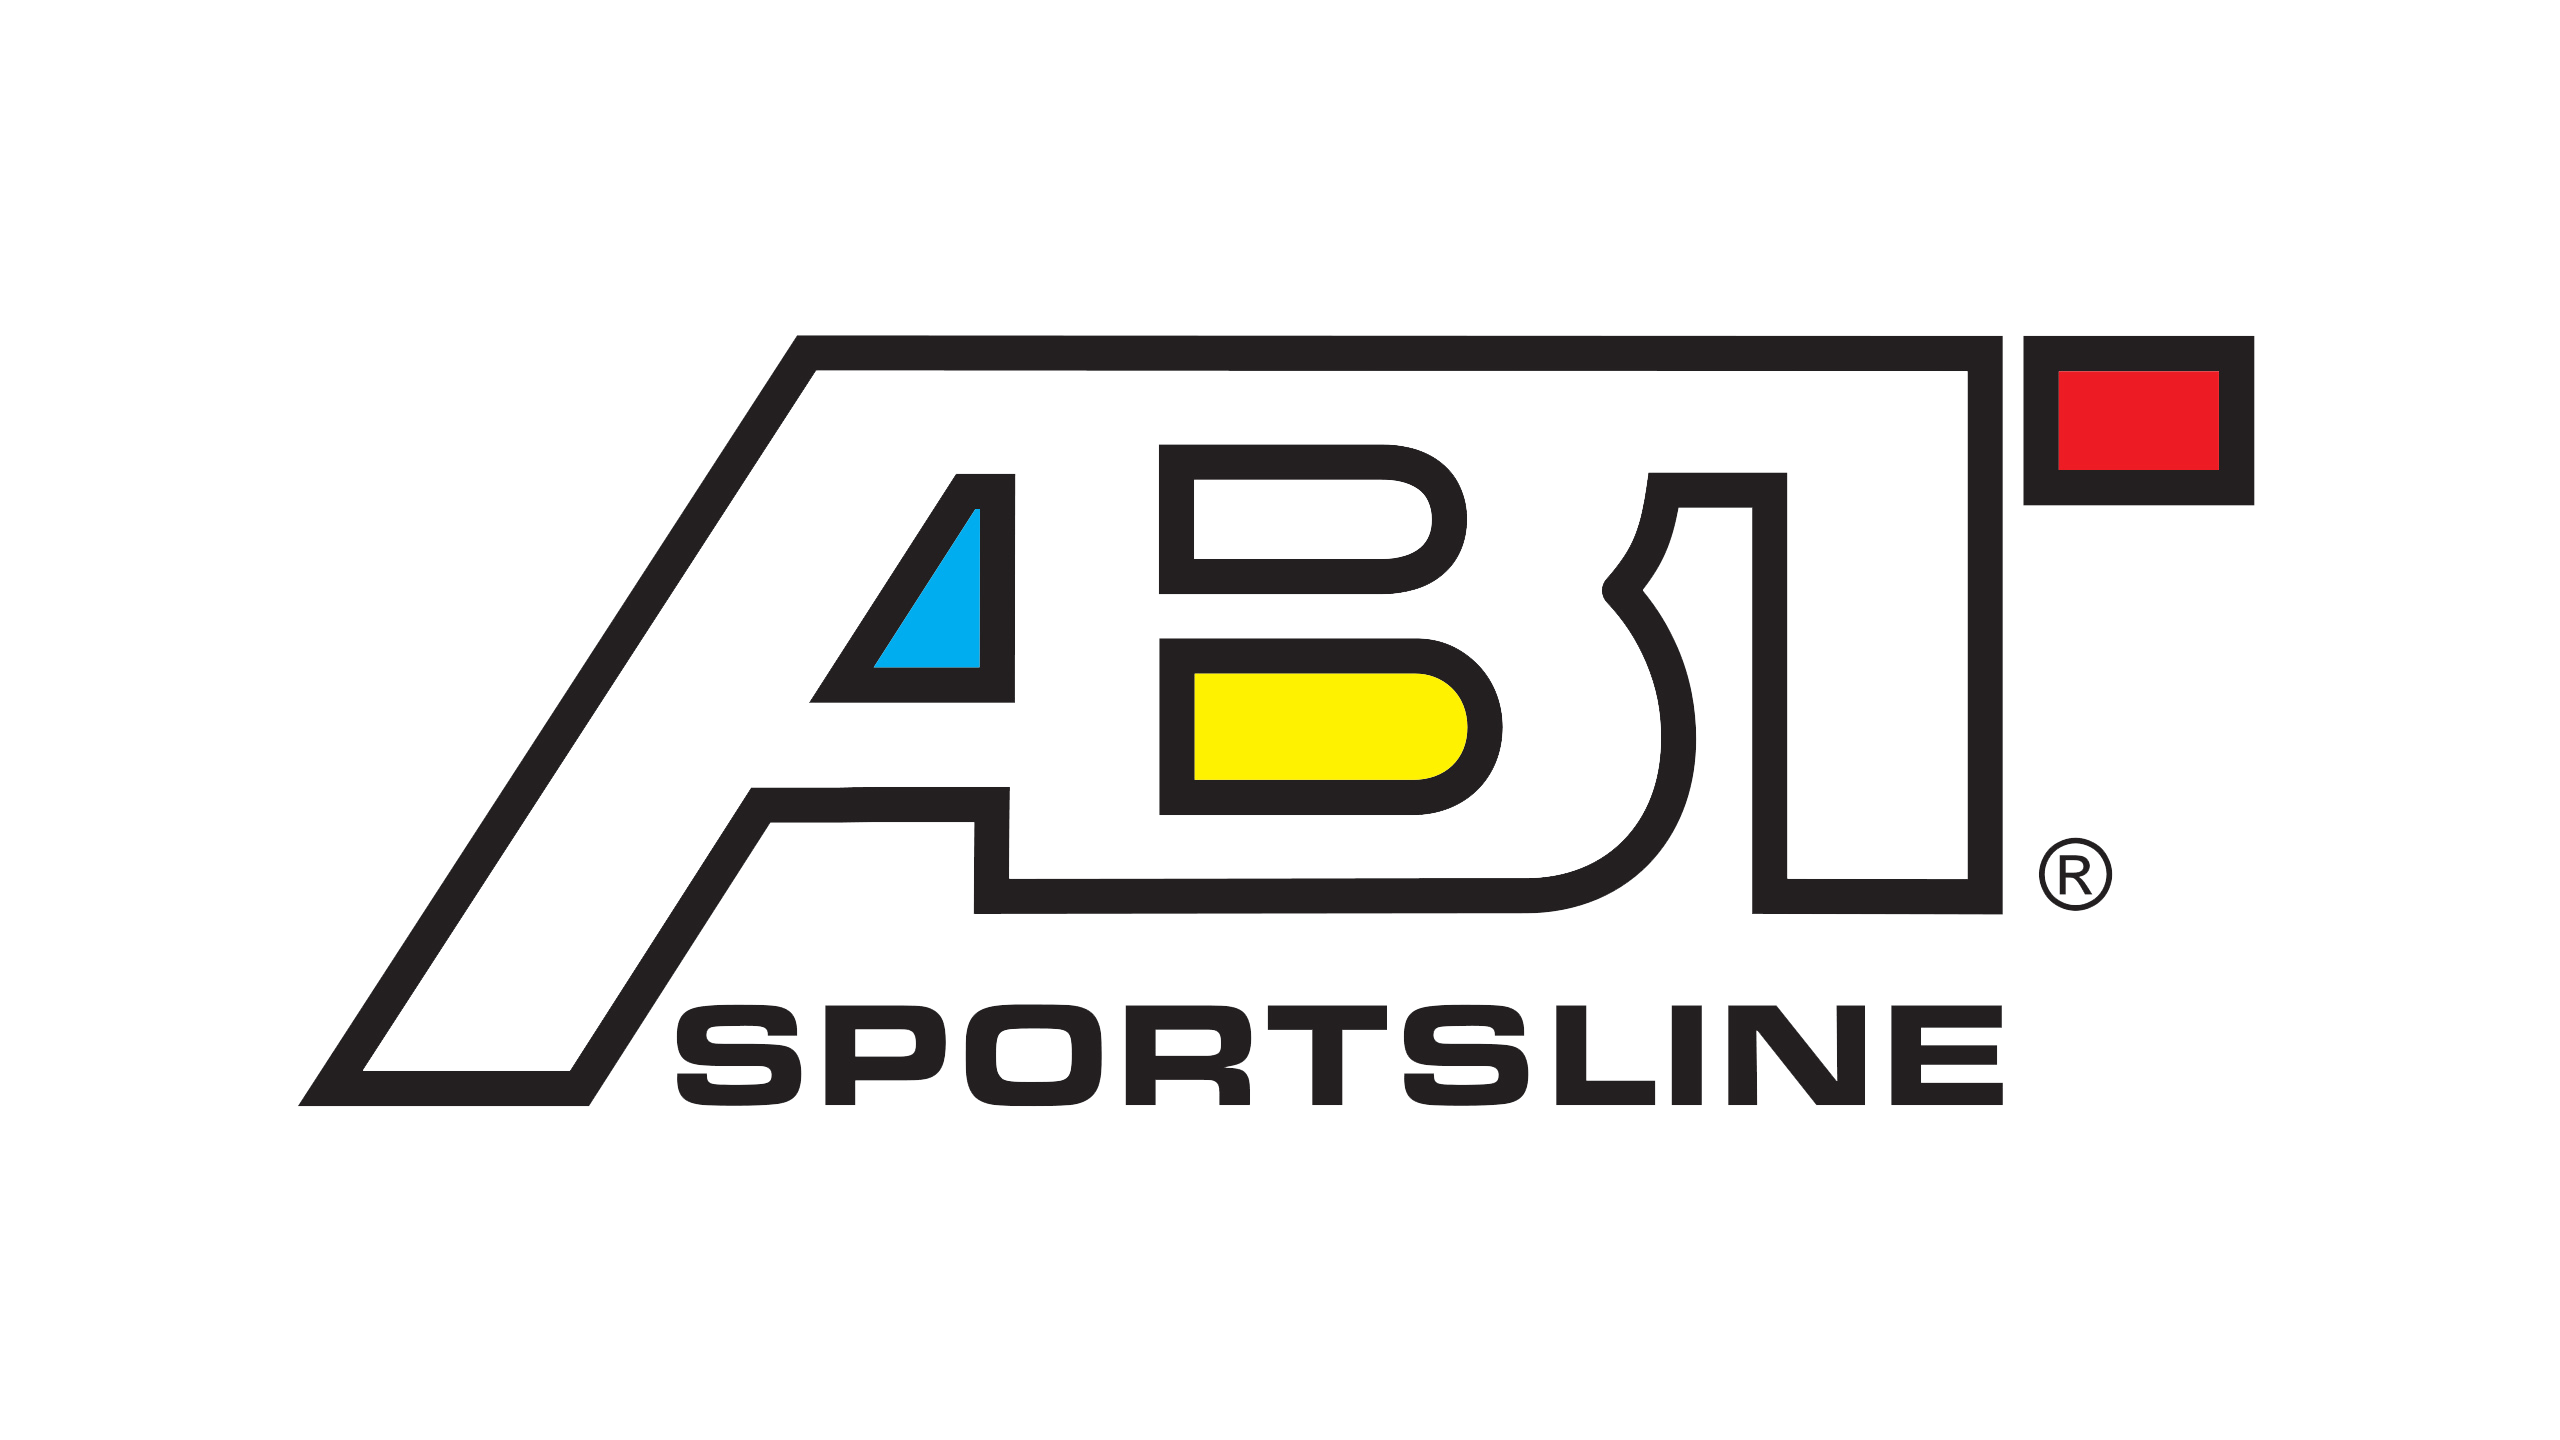 ABT Co Logo Vector